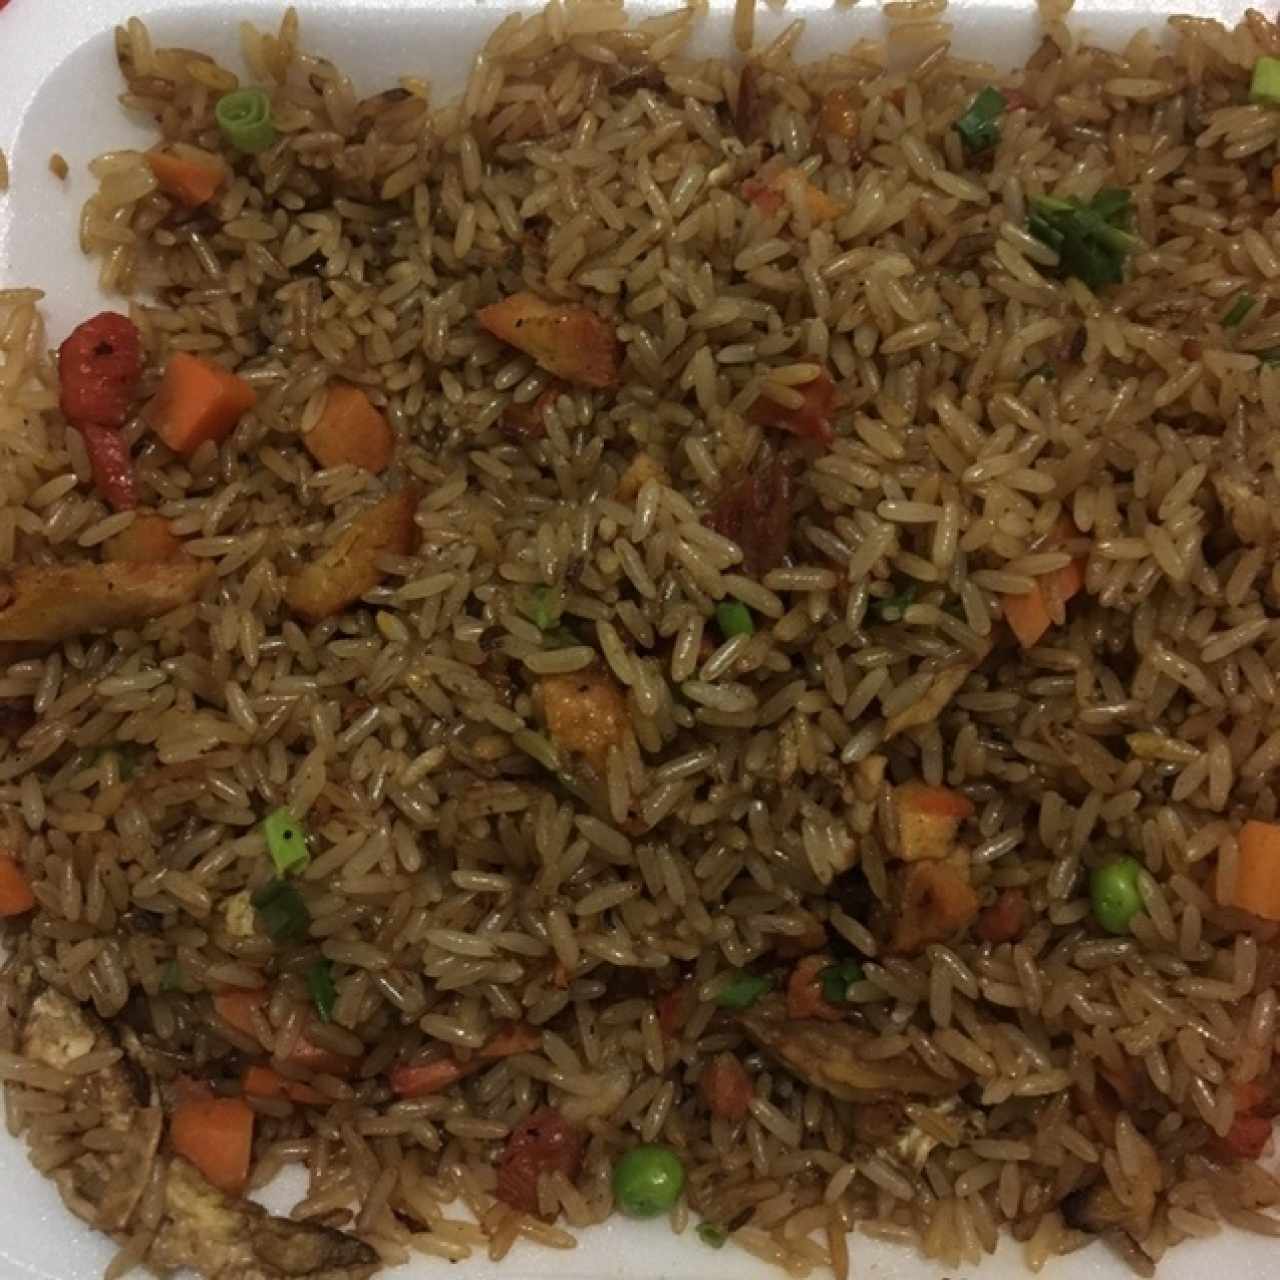 arroz frito con puerco